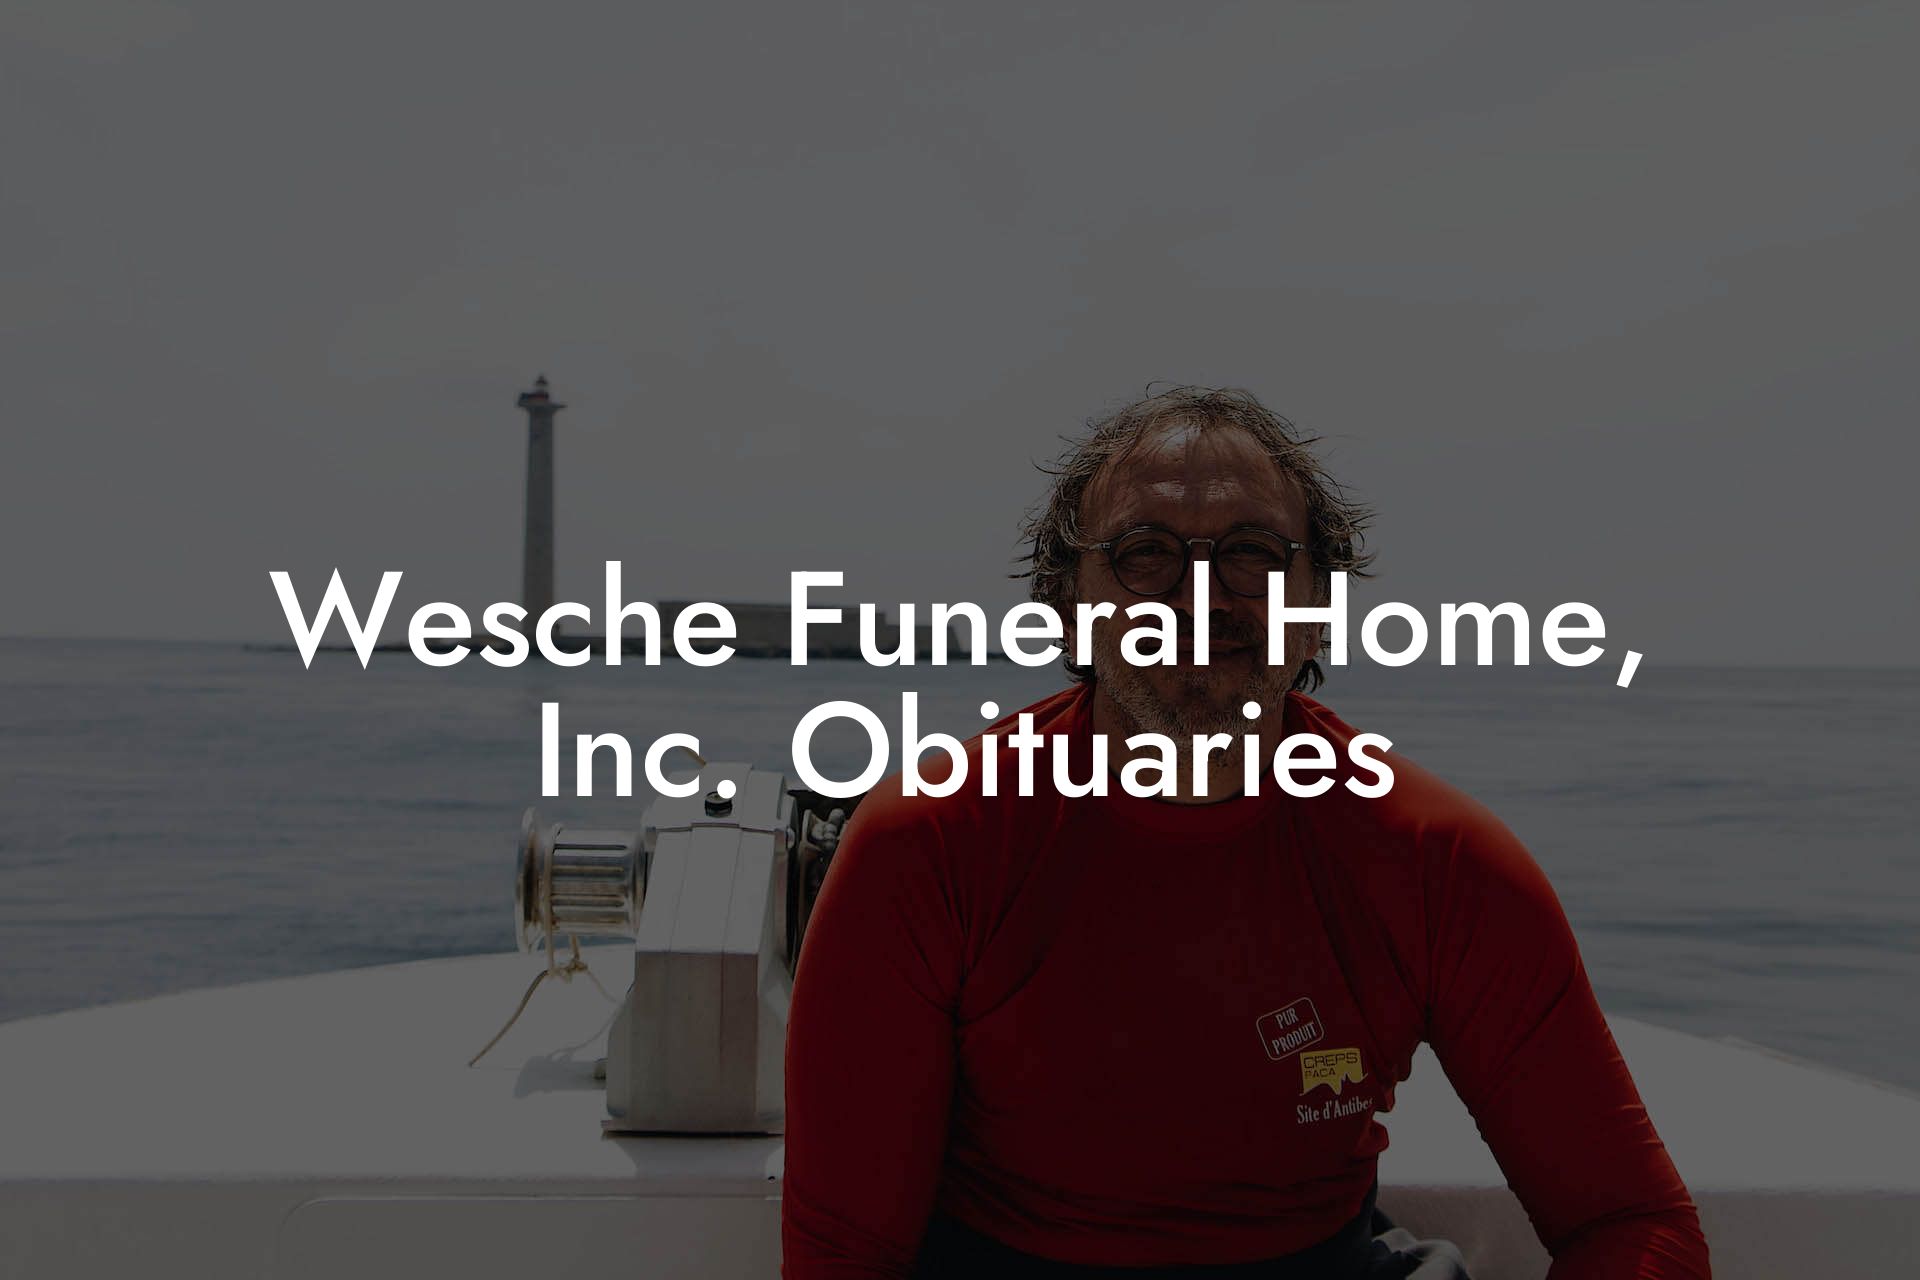 Wesche Funeral Home, Inc. Obituaries